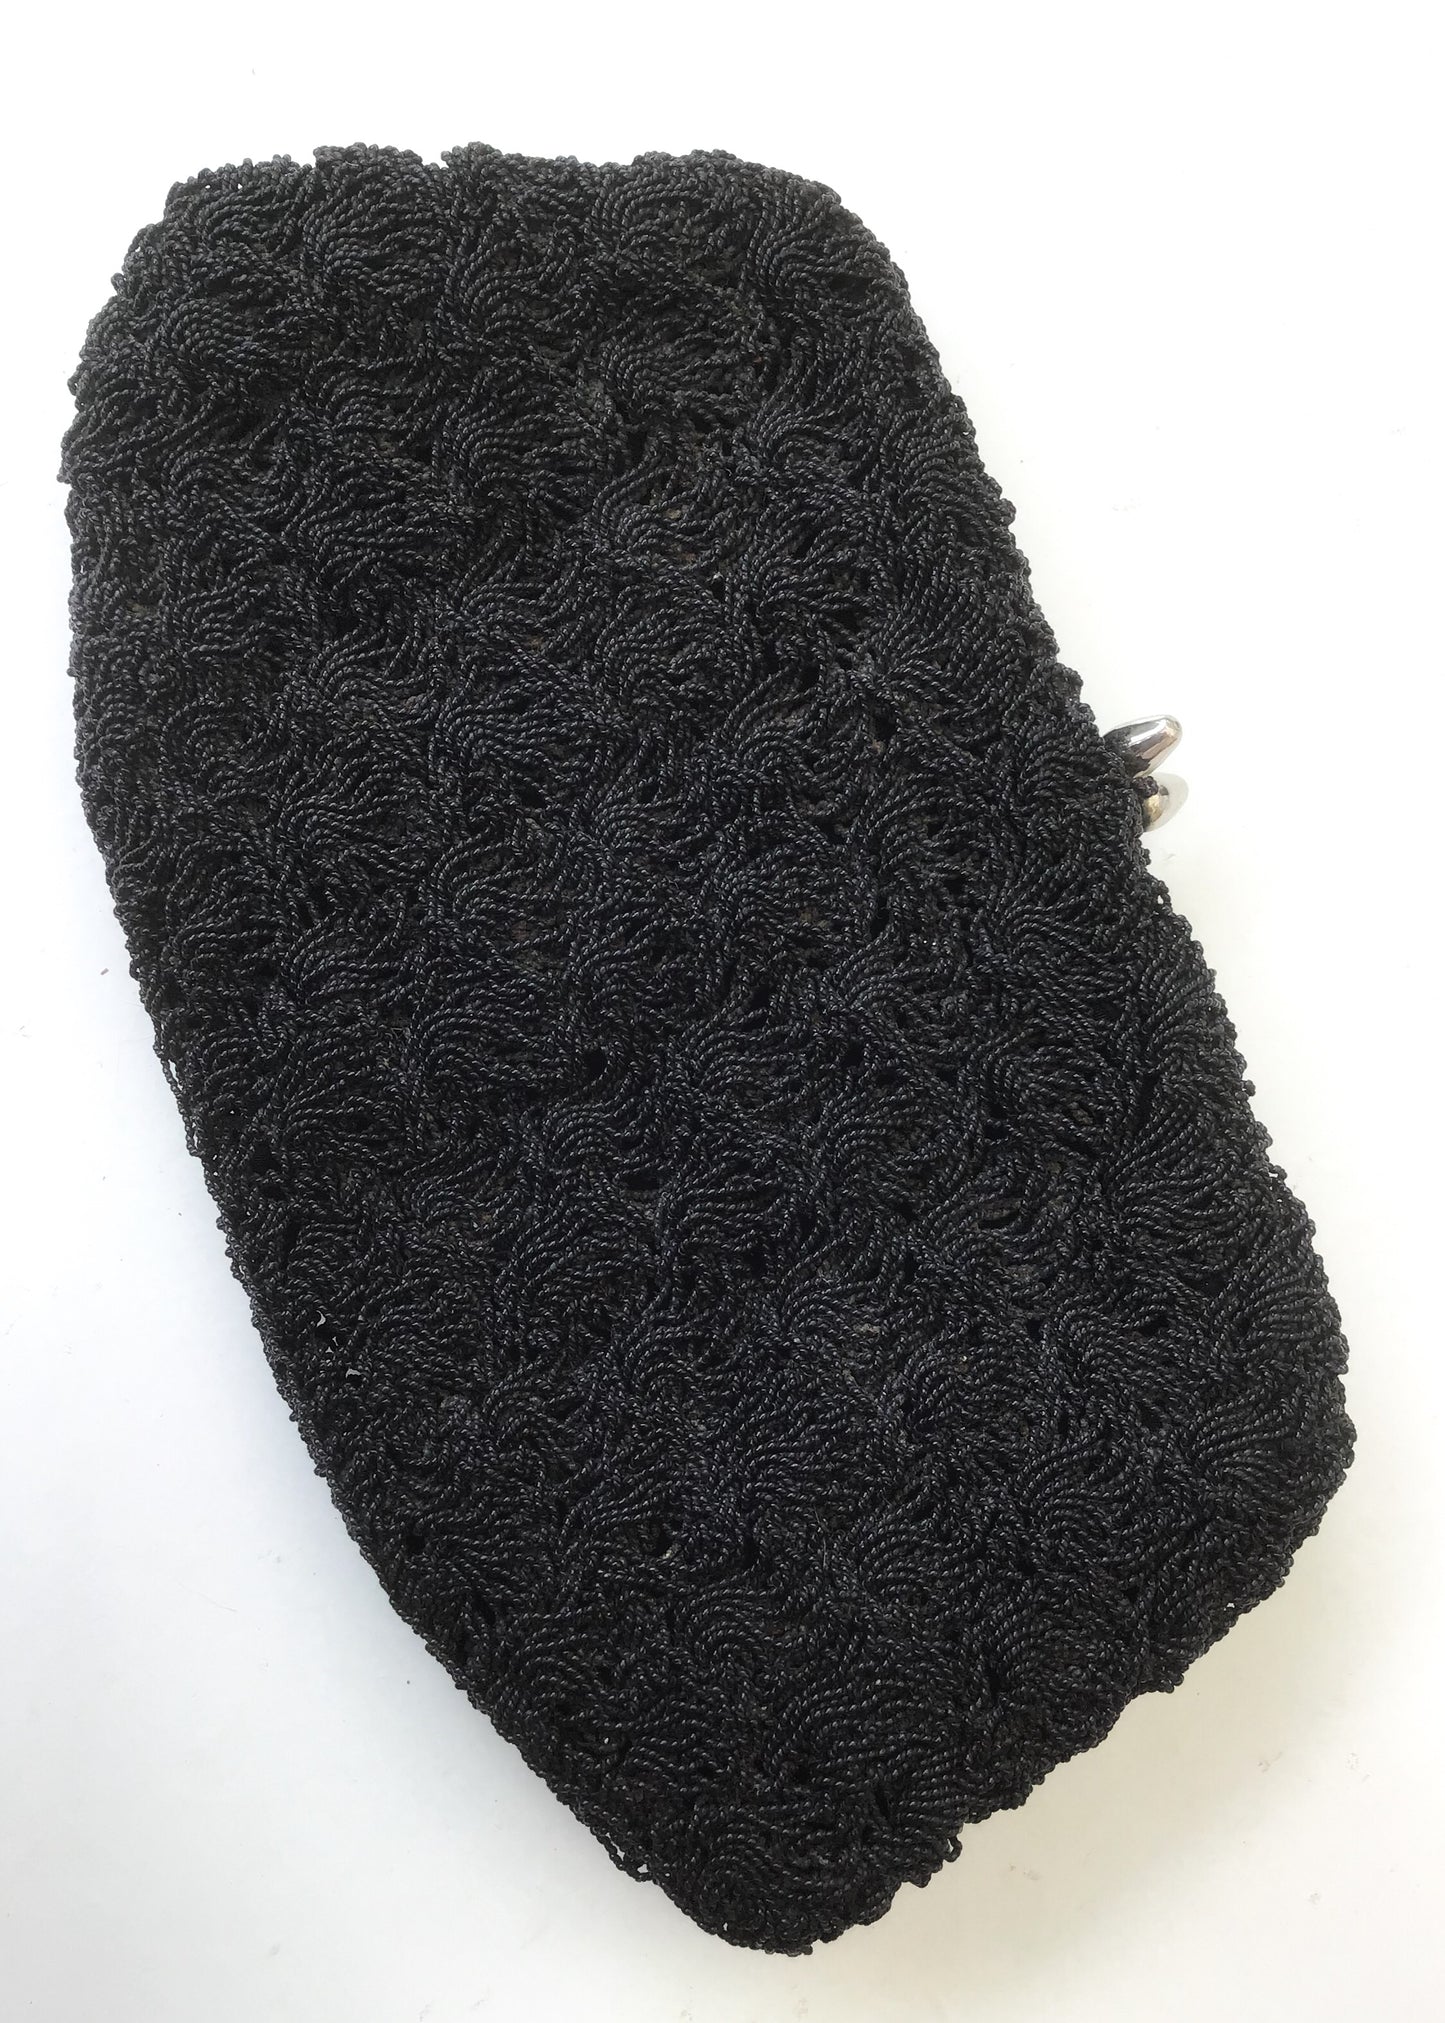 1940s Vintage Black Crochet Evening Clutch Purse